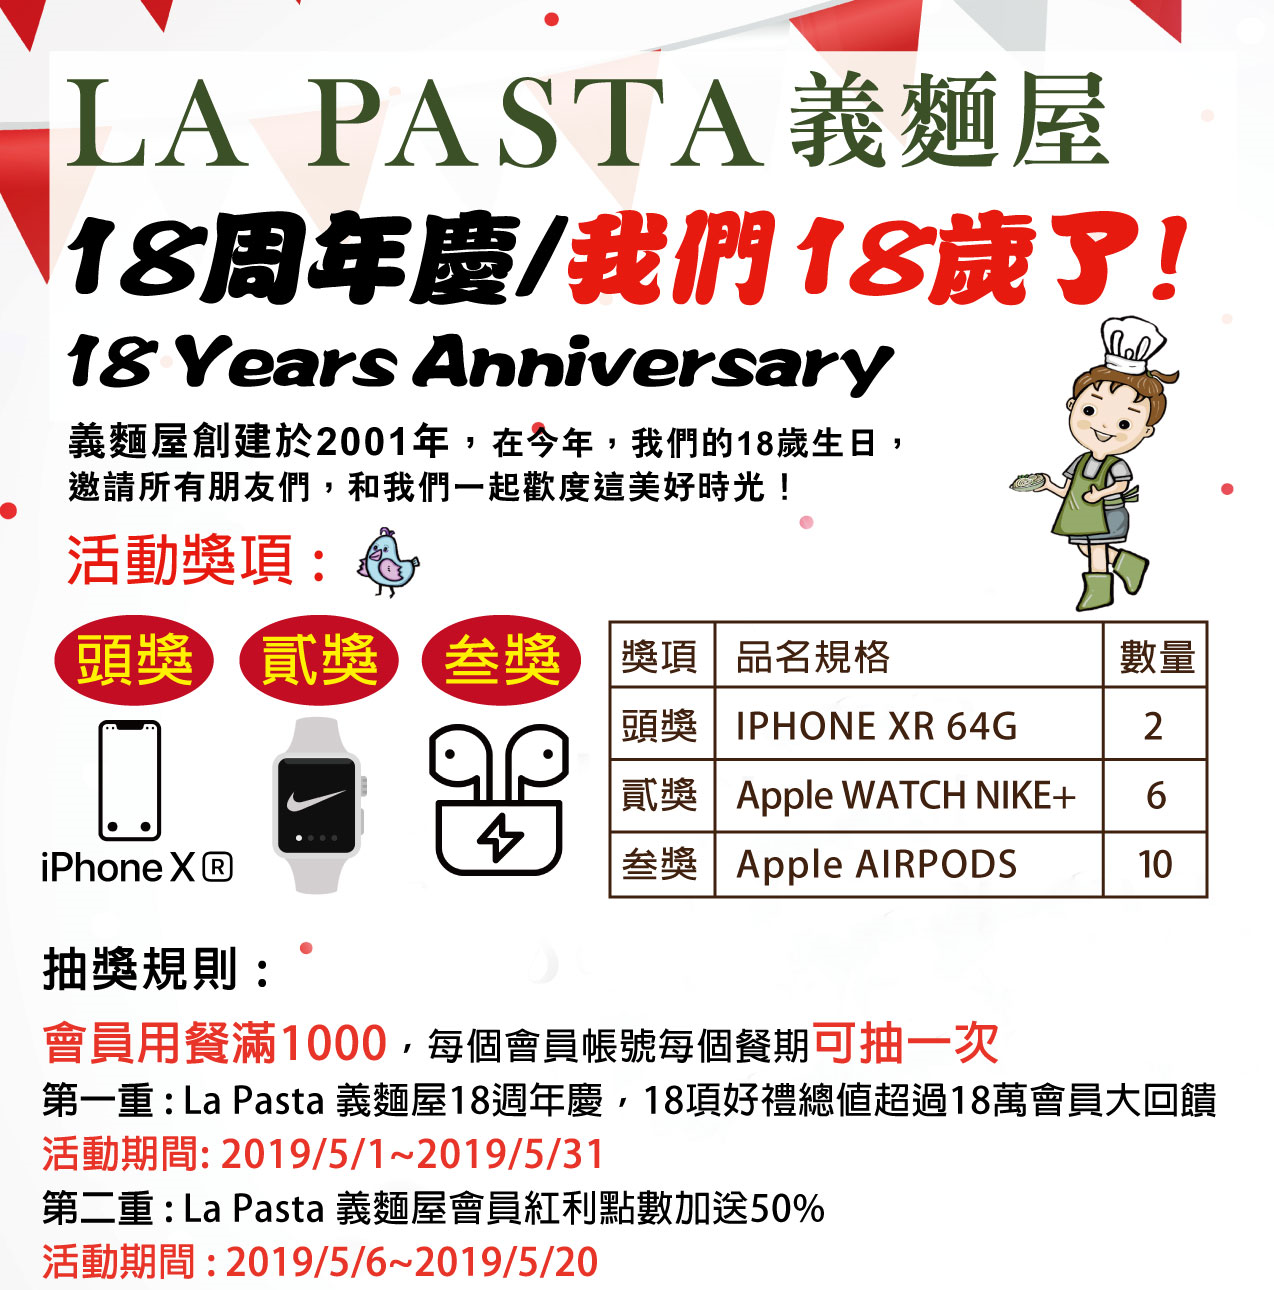 La Pasta 18th Anniversary lottery